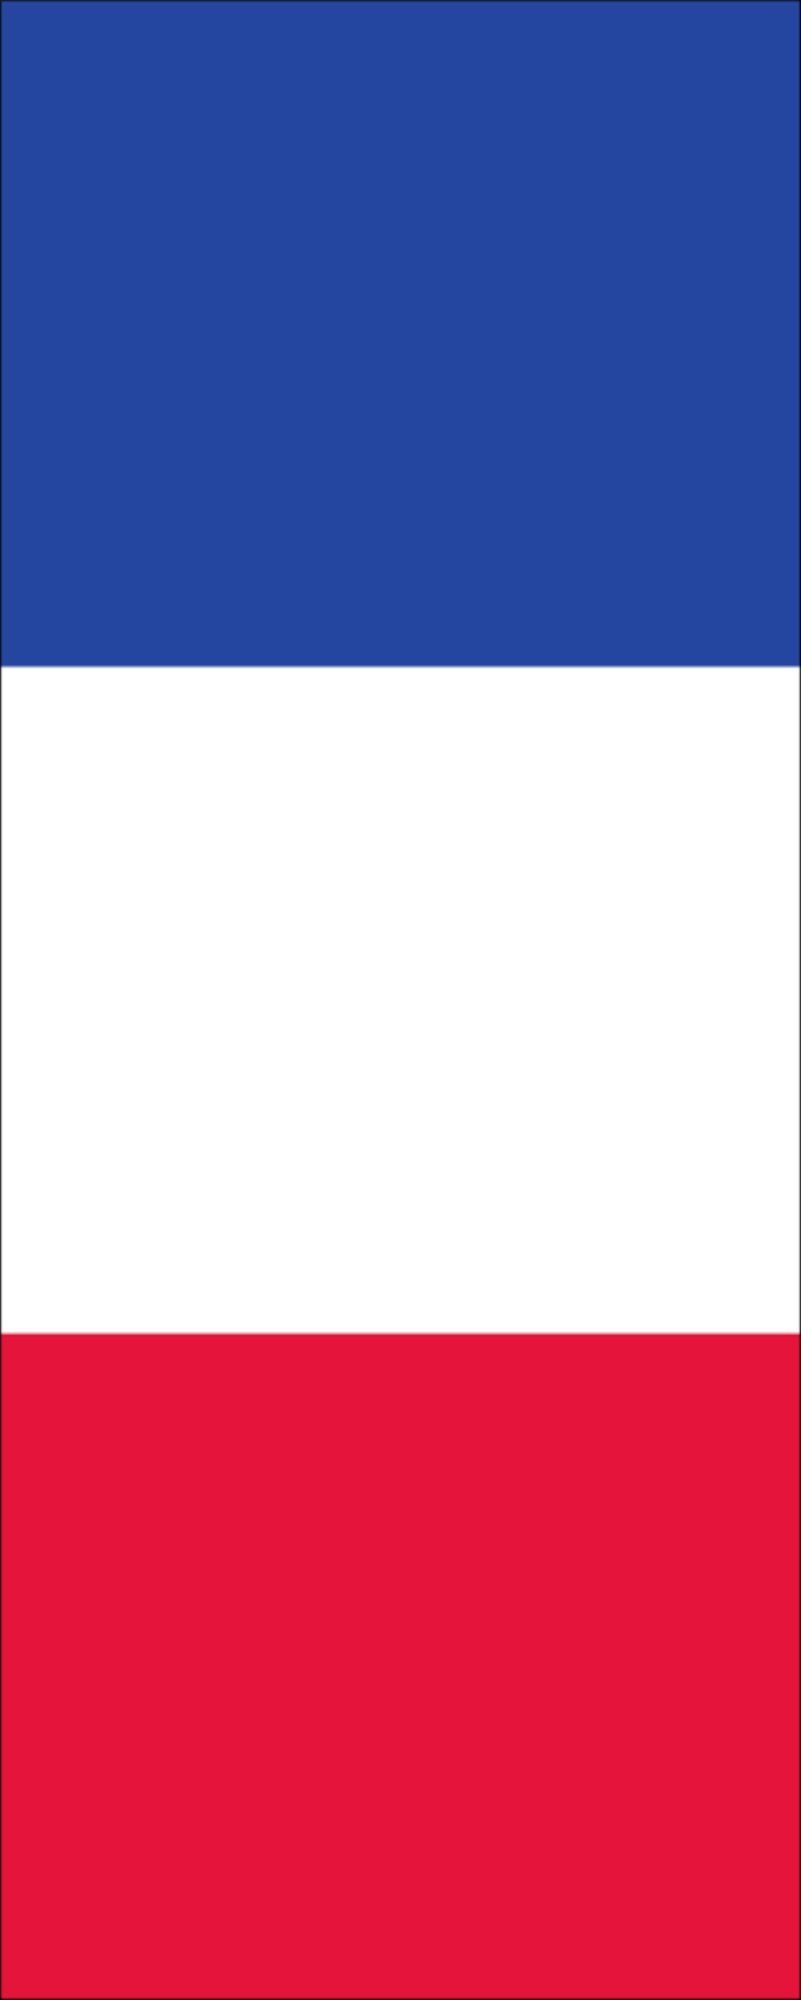 Flagge 160 Frankreich flaggenmeer g/m² Hochformat